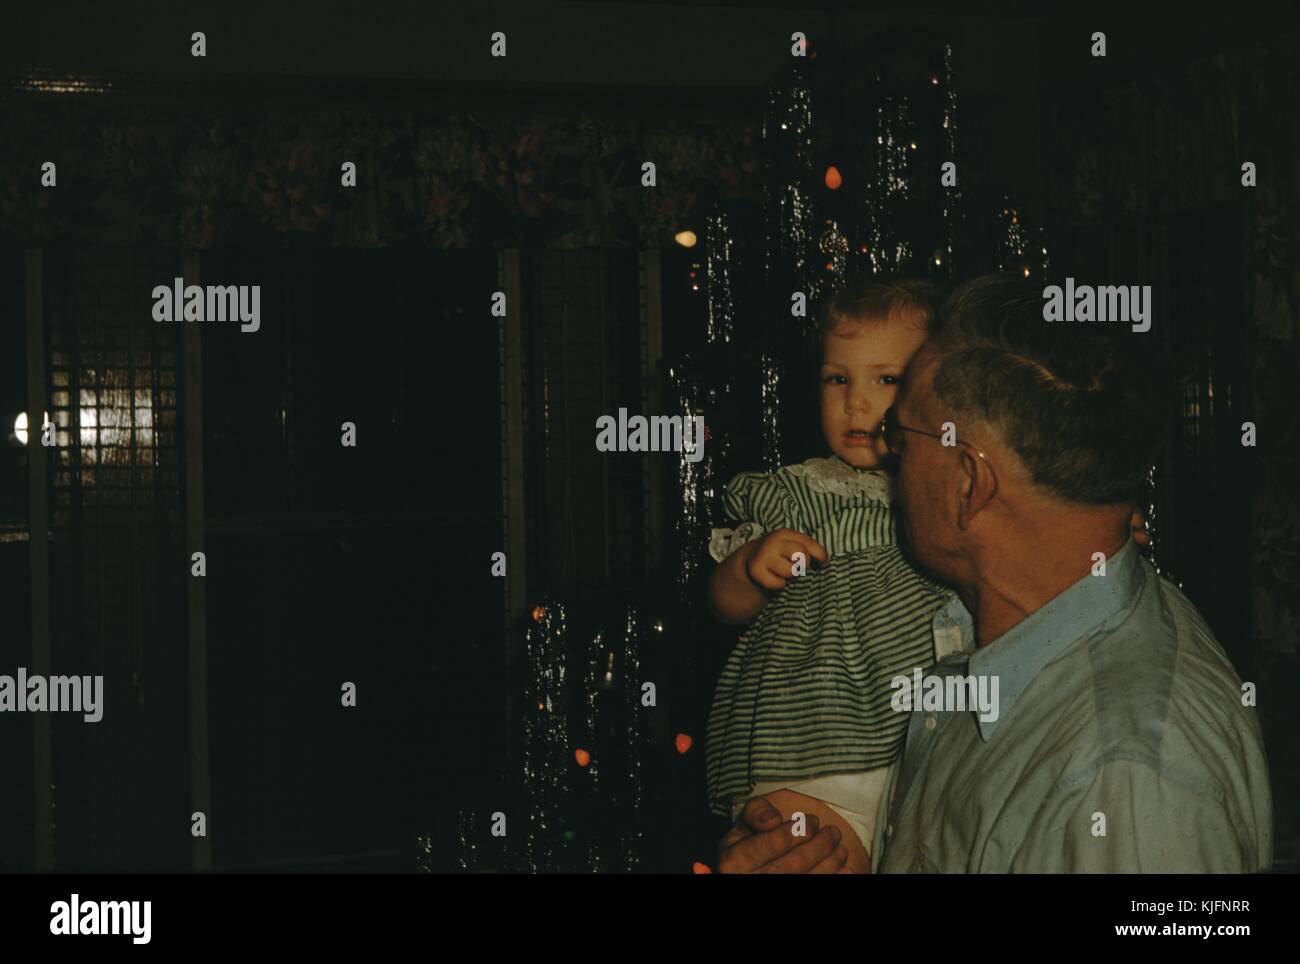 Une photographie d'un grand-père tenant son enfant en petite-fille, elle porte une robe rayée verte et blanche, tandis qu'il porte une chemise bleu enfoncé, guirlandes et lumières peuvent être vu suspendu à l'arbre de Noël derrière eux, 1952. Banque D'Images